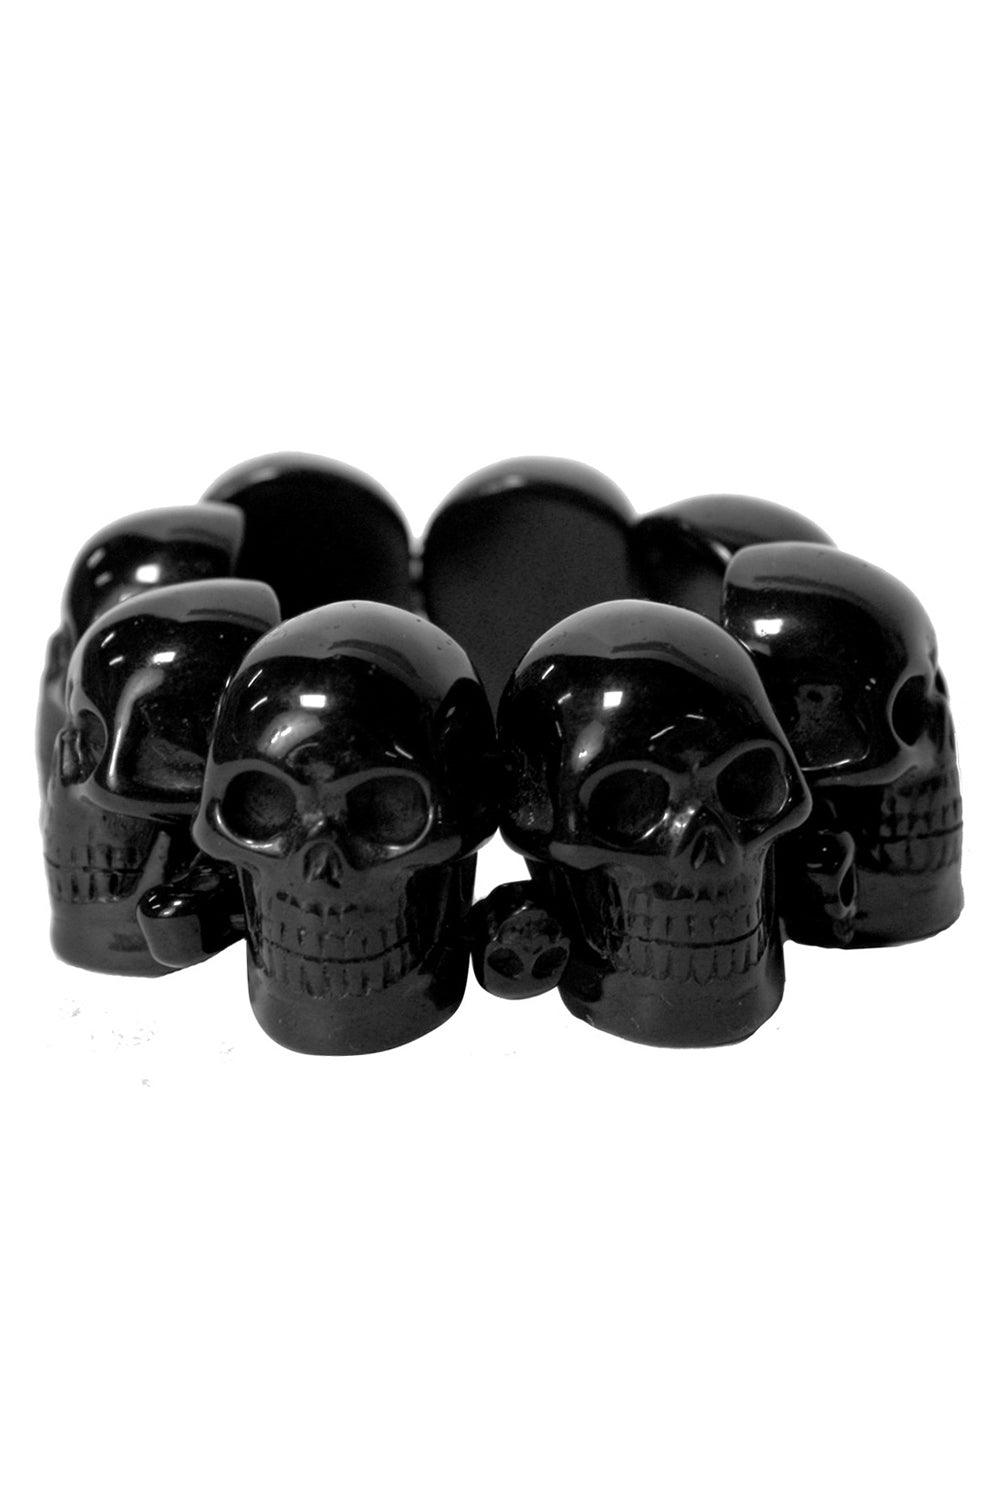 Kreepsville Black Skull Collection Bracelet - VampireFreaks